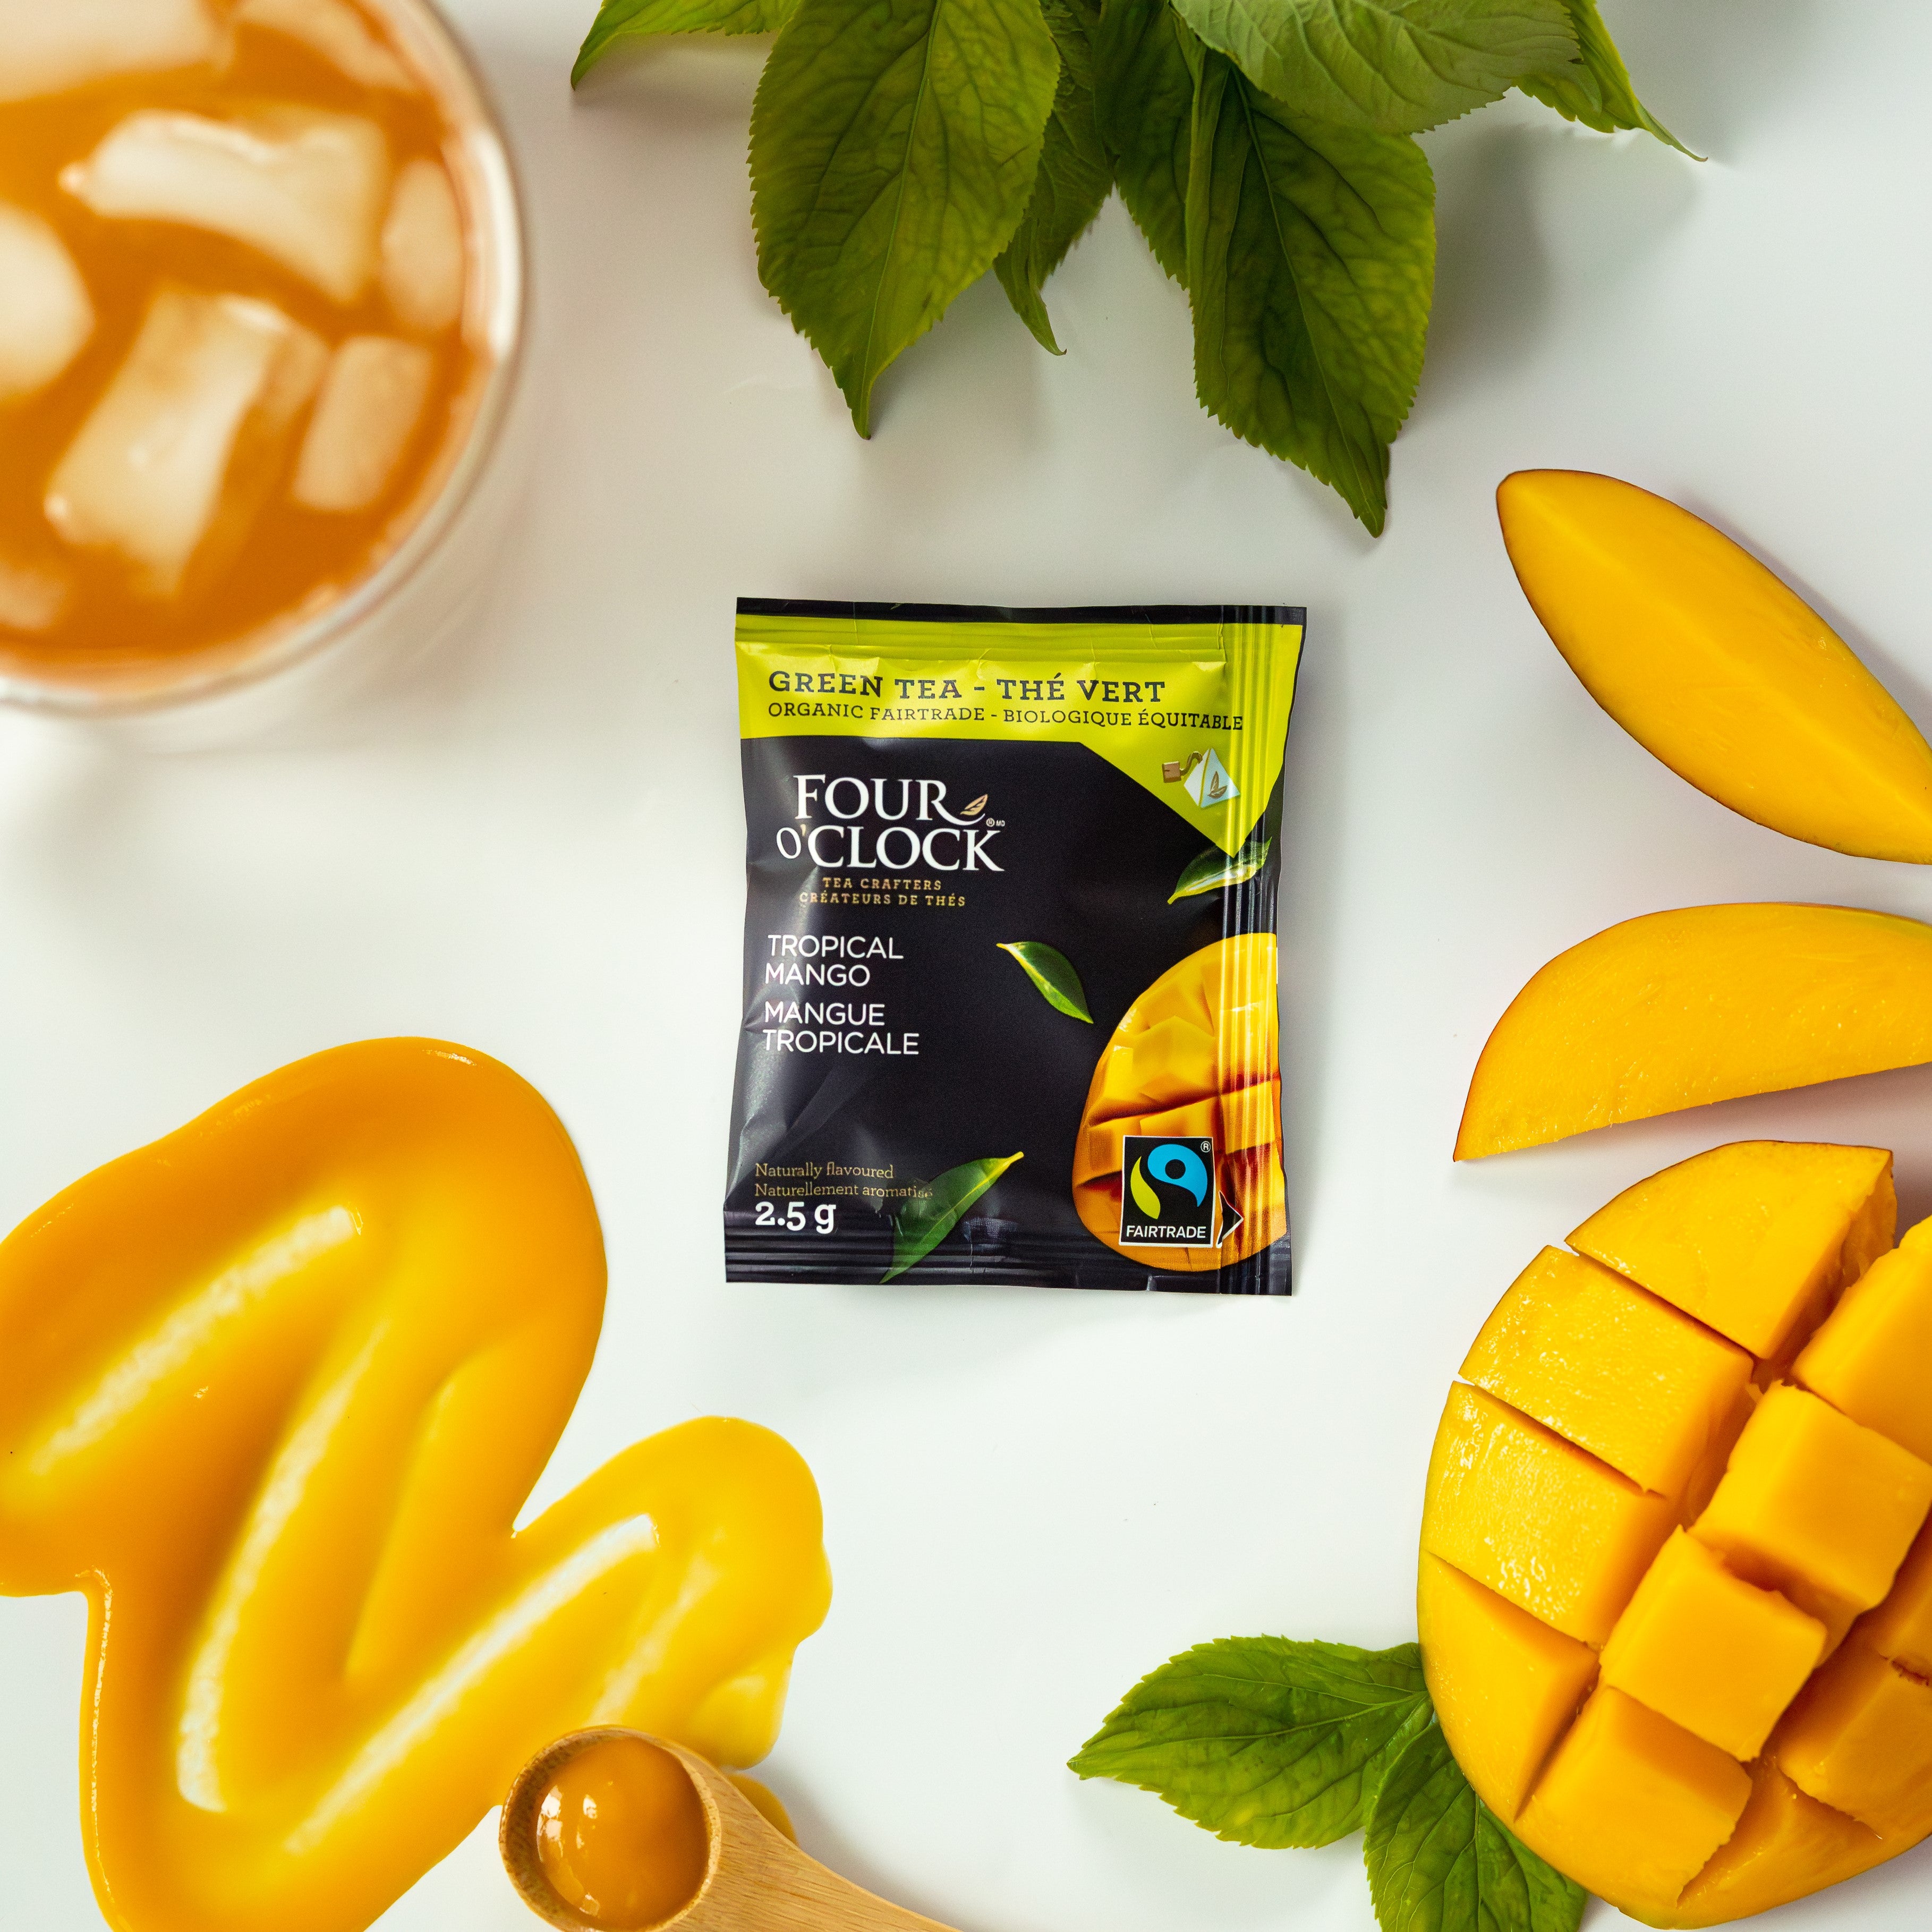 Tropical Mango Organic Fairtrade Green Tea